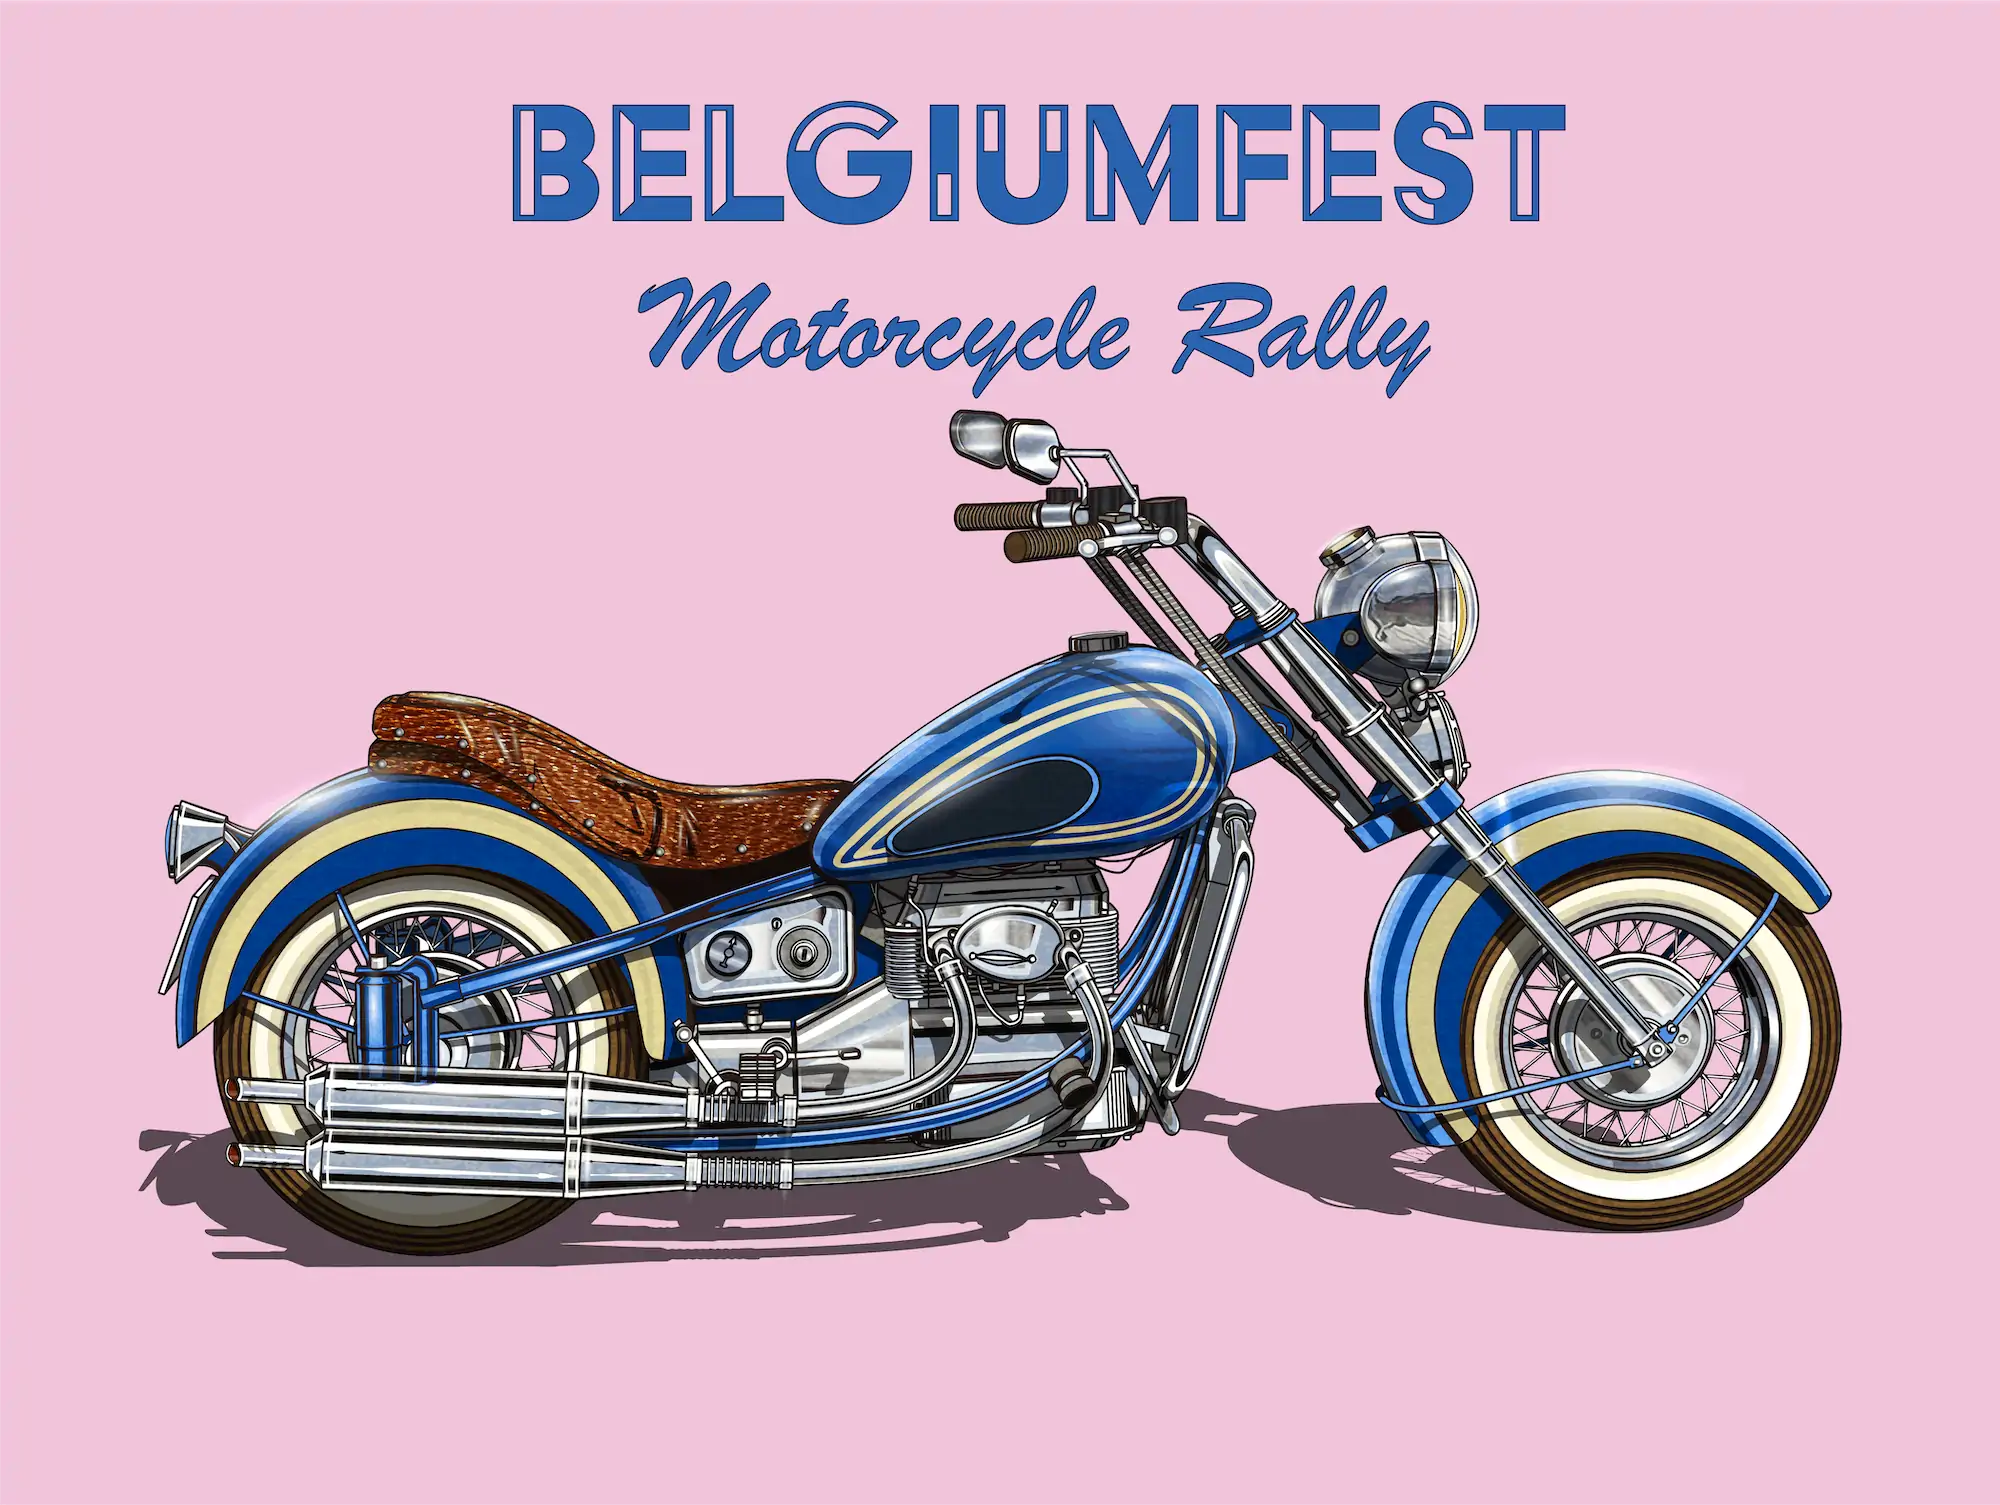 Belgiumfest Motorcycle Rally